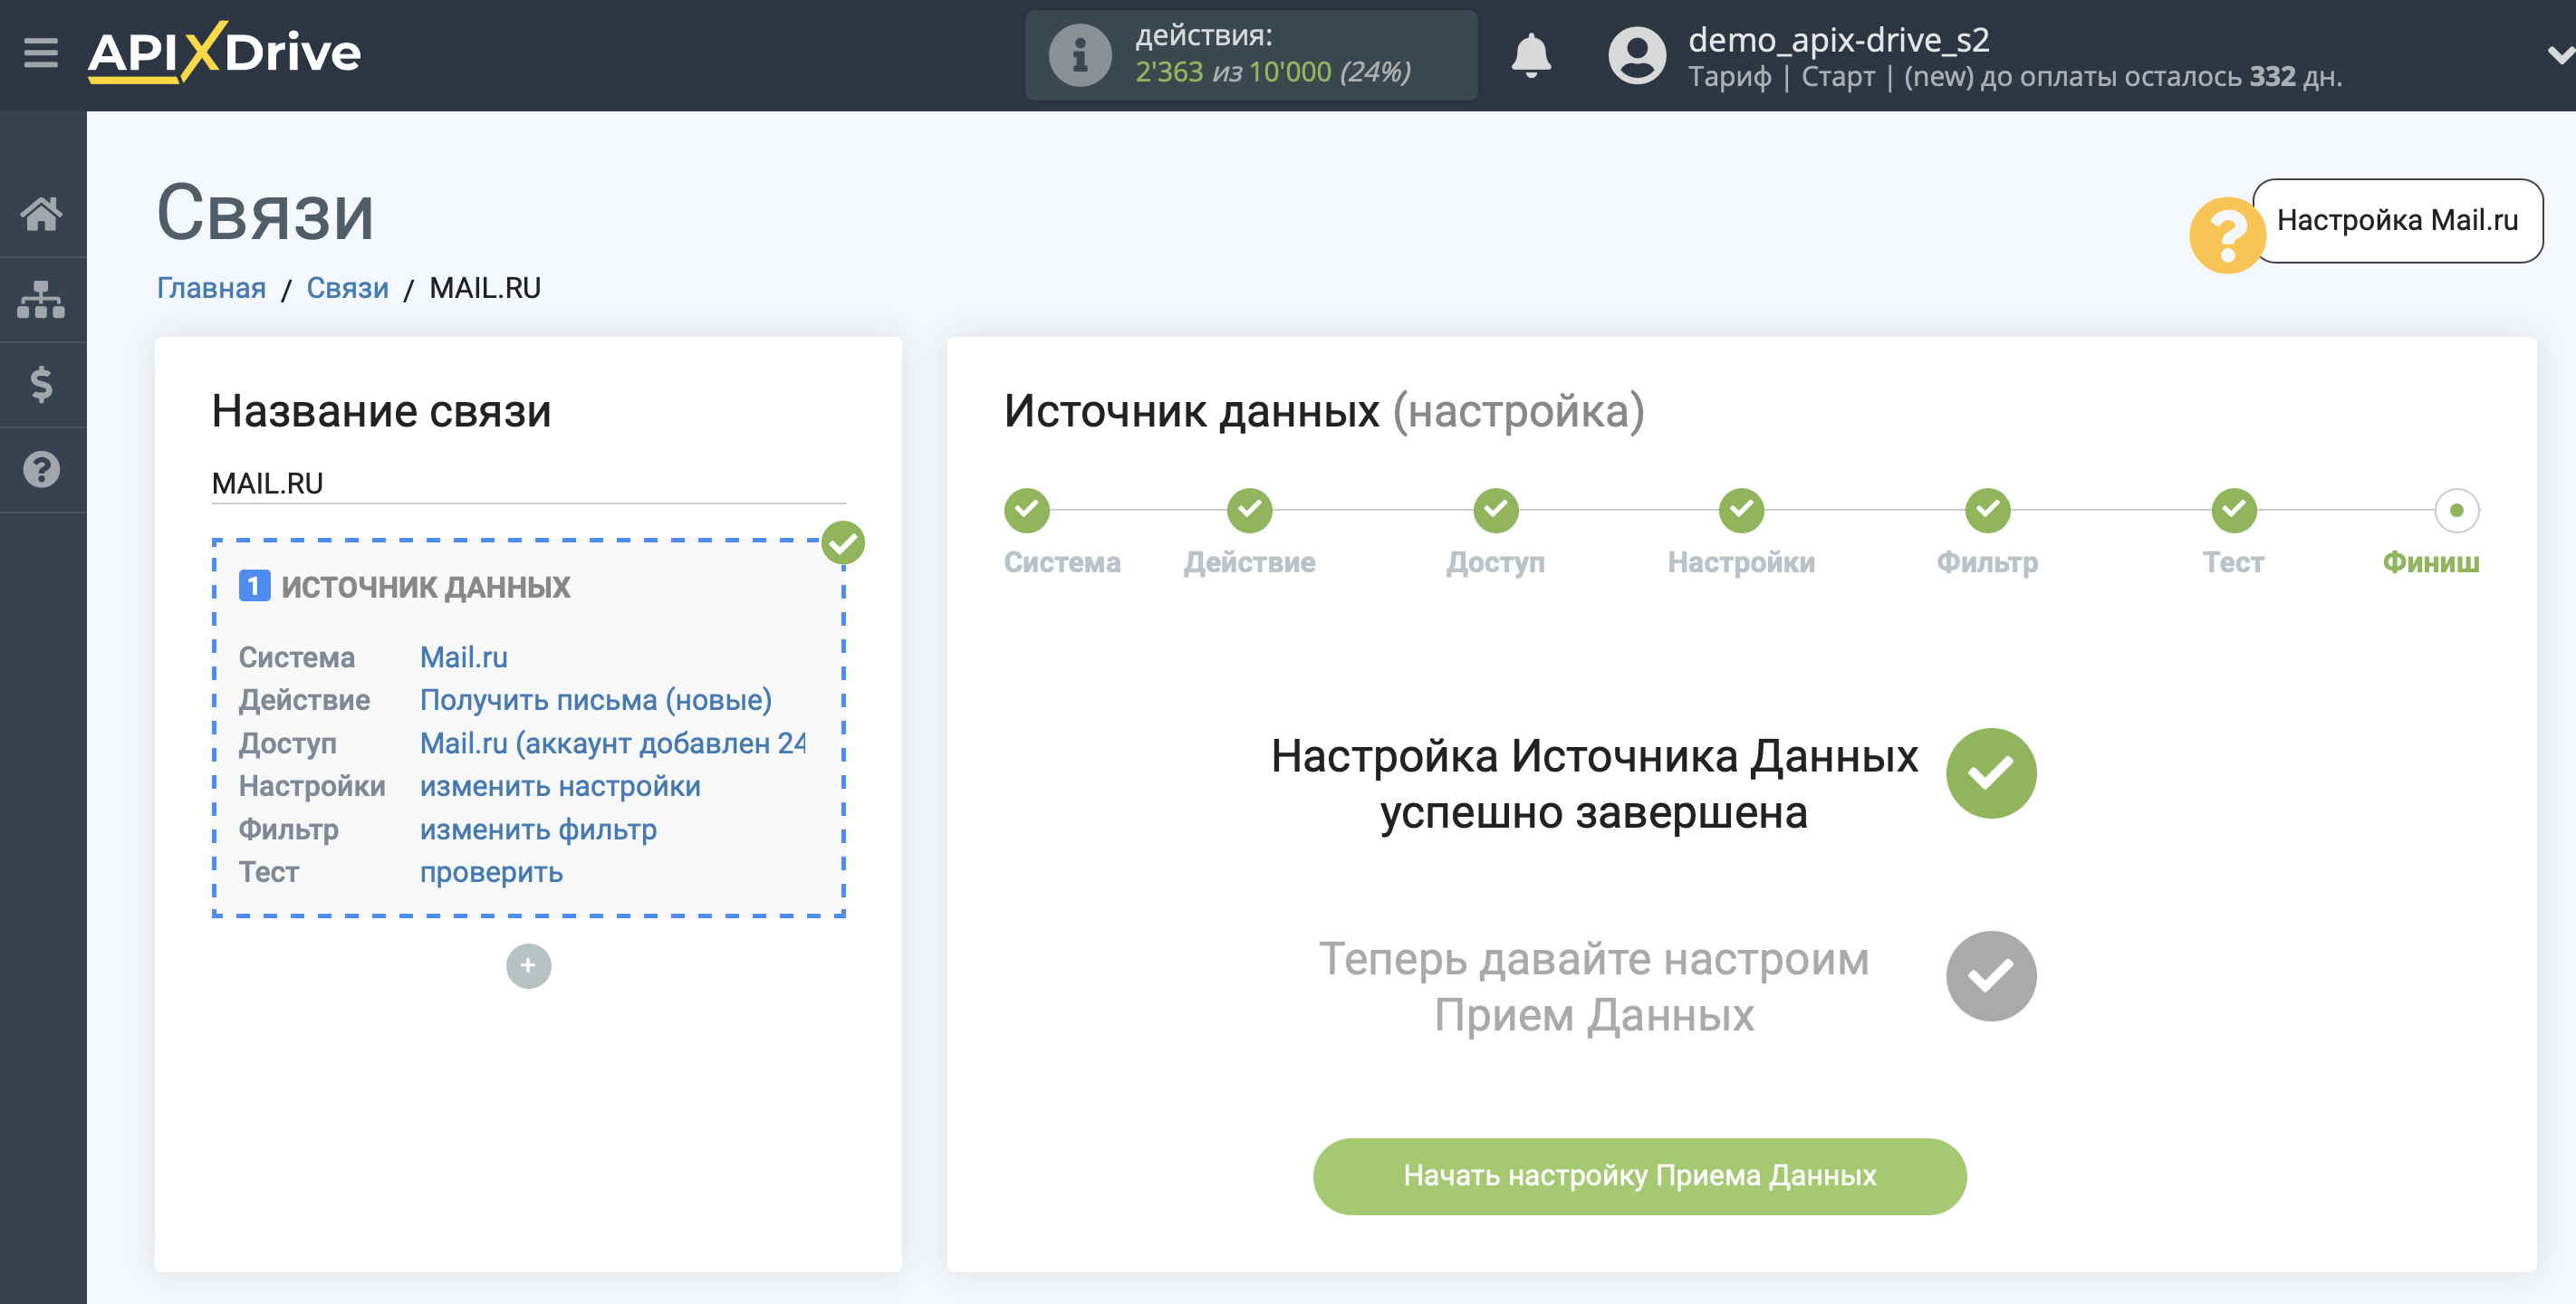 Настройка Mail.ru | Переход к настройке приема данных